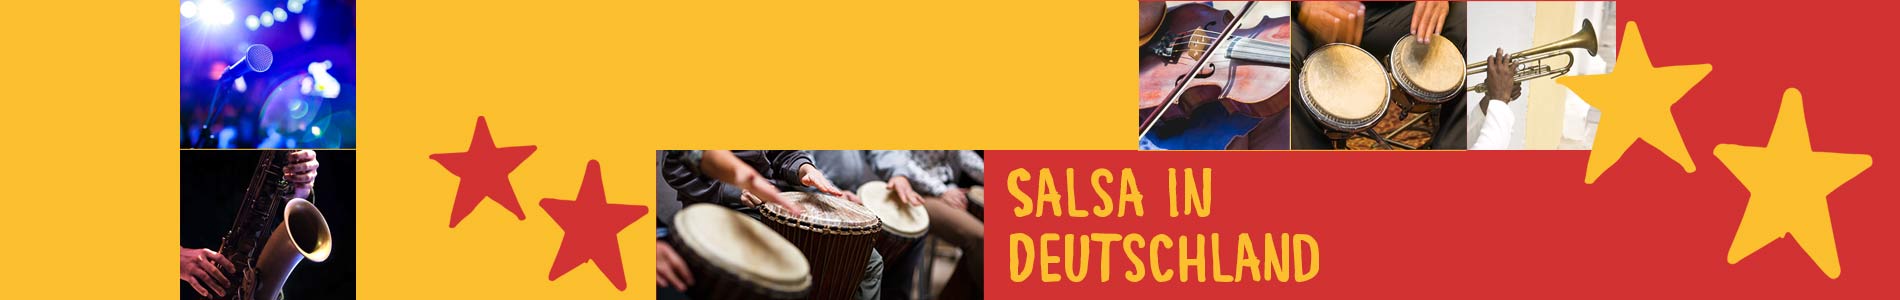 Salsa in Burglauer – Salsa lernen und tanzen, Tanzkurse, Partys, Veranstaltungen